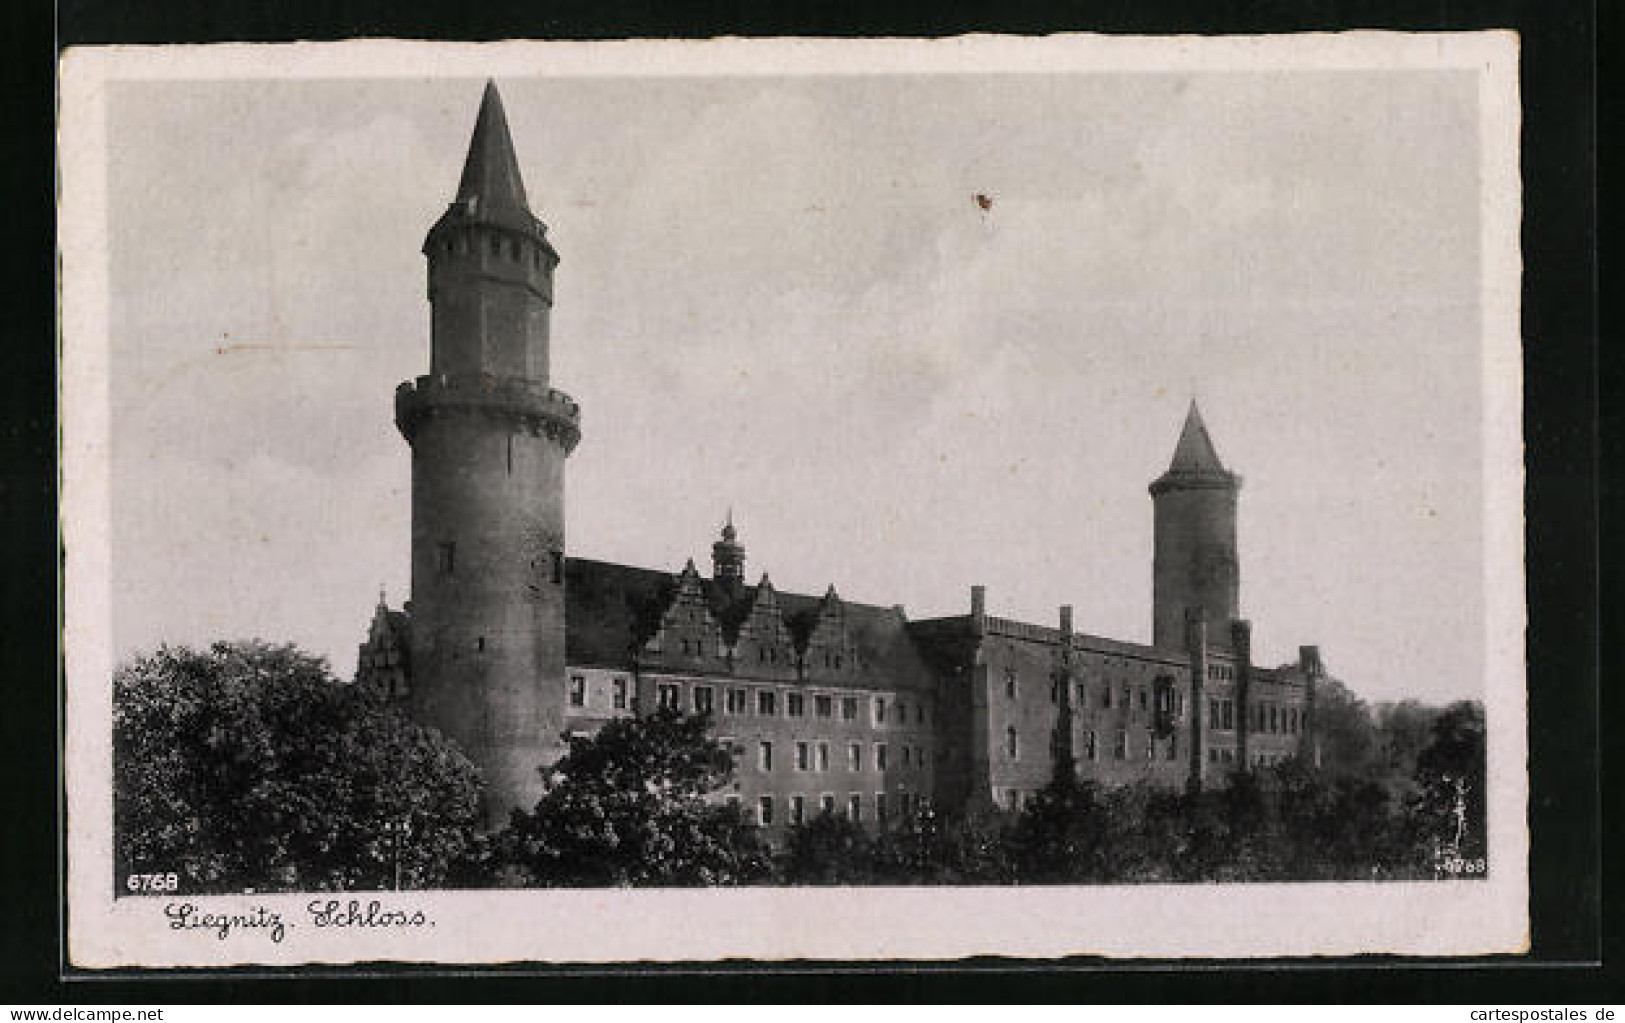 AK Liegnitz, Das Schloss Mit Den Türmen  - Schlesien